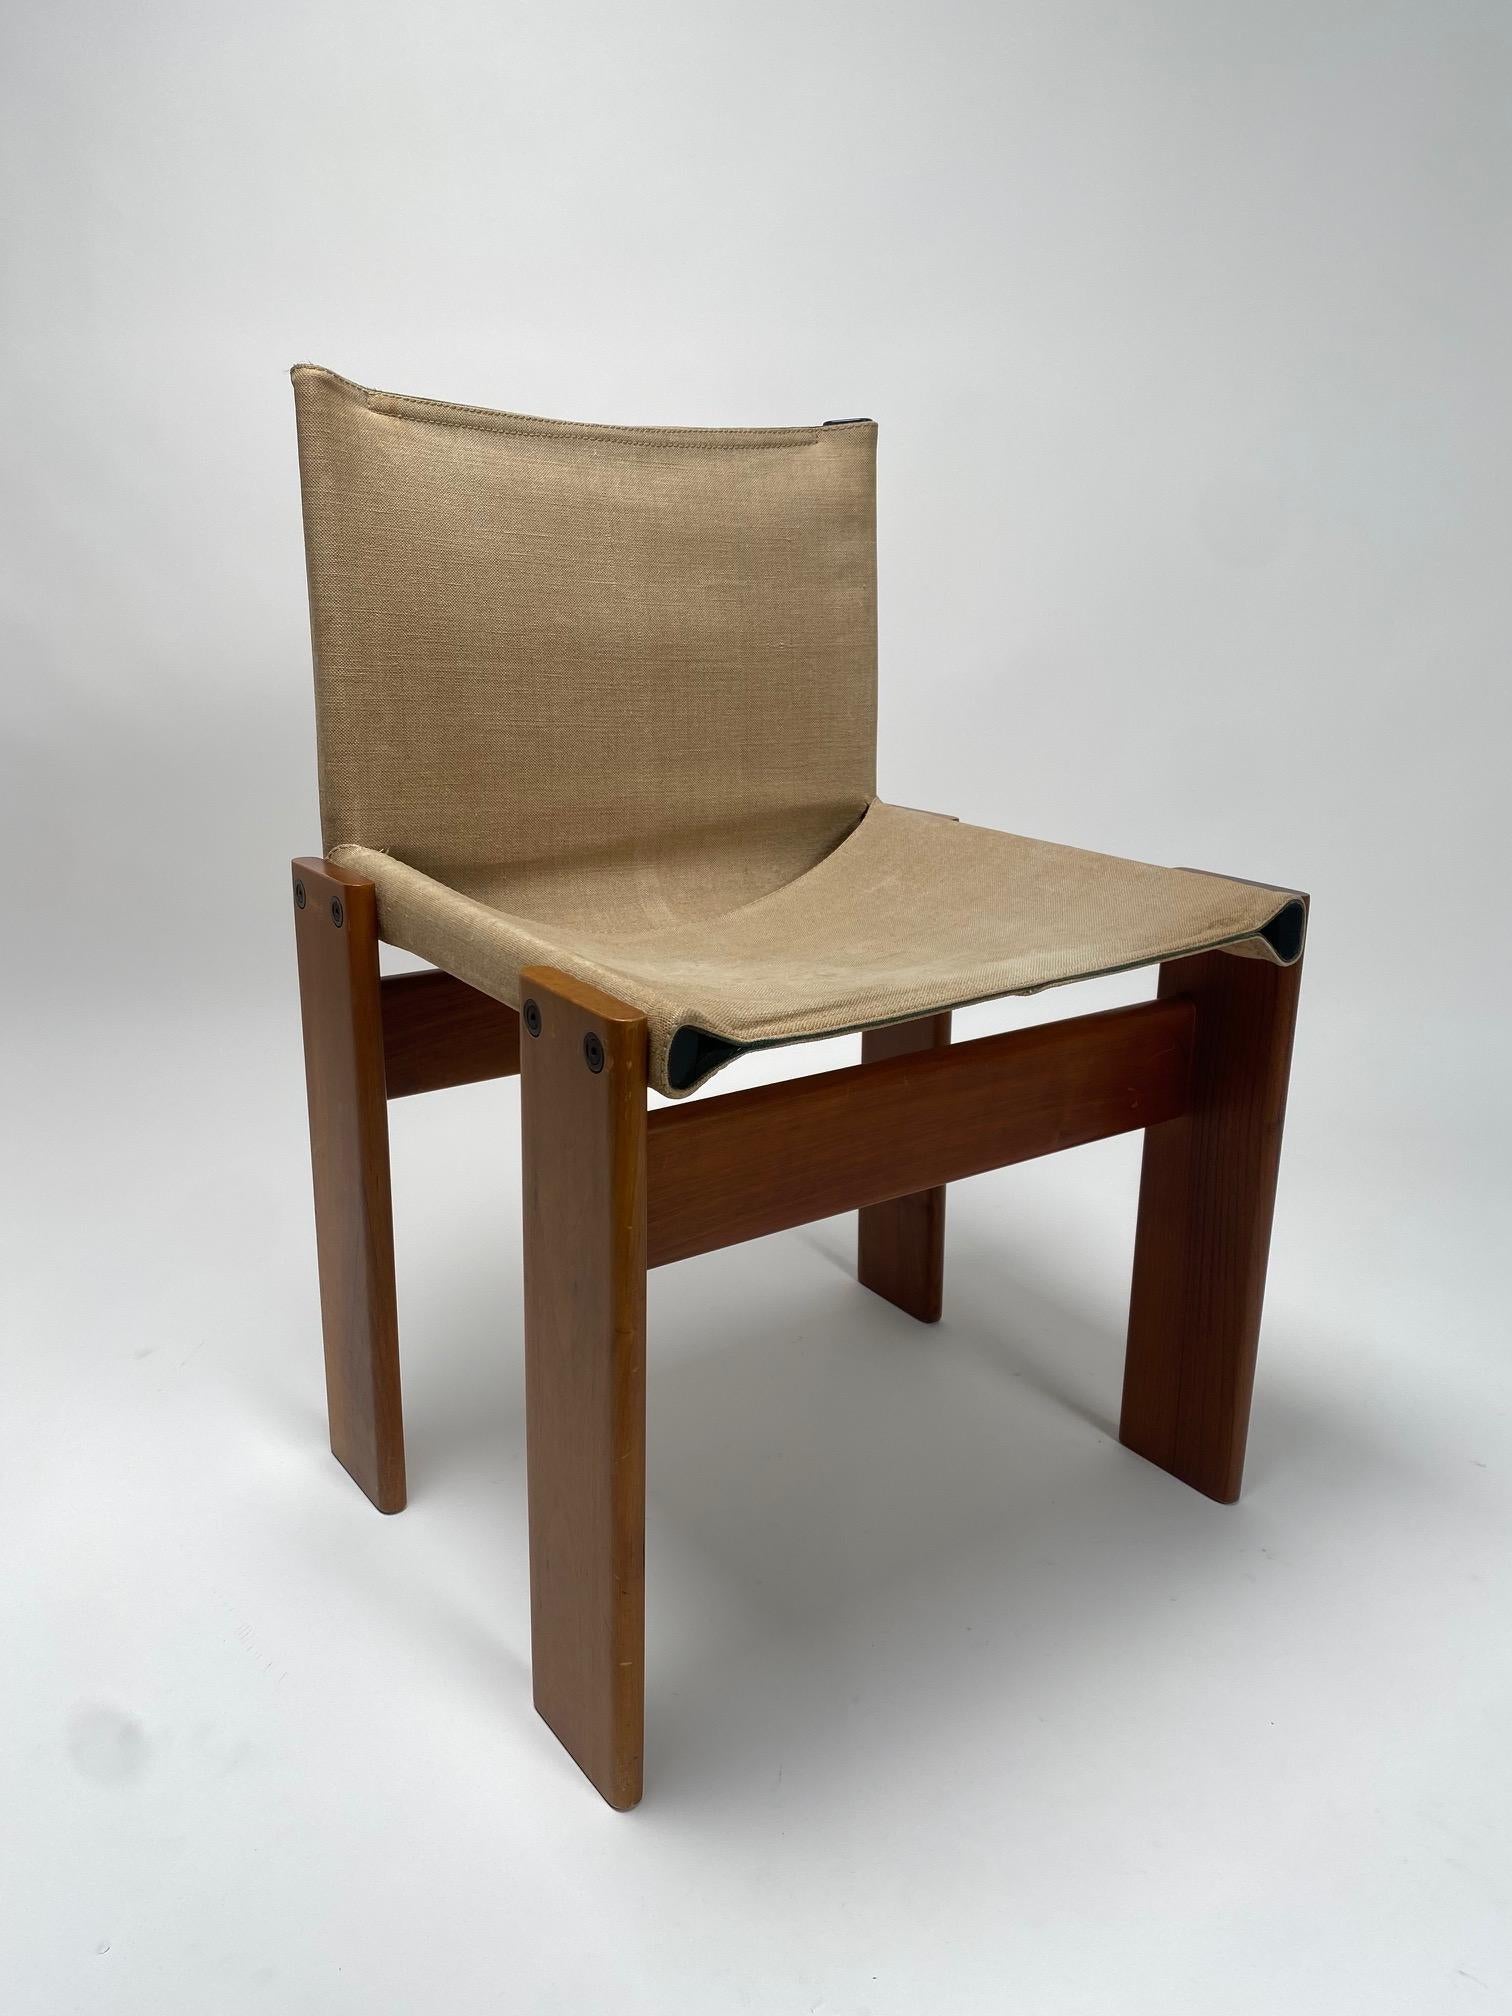 Satz von 6 Leinwand und Holz Stühle Modell Monk, Afra & Tobia Scarpa für Molteni, Italien

Es ist eines der kultigsten und raffiniertesten Modelle des berühmten italienischen Architekten- und Designerpaares Afra & Tobia Scarpa. Bequeme, elegante